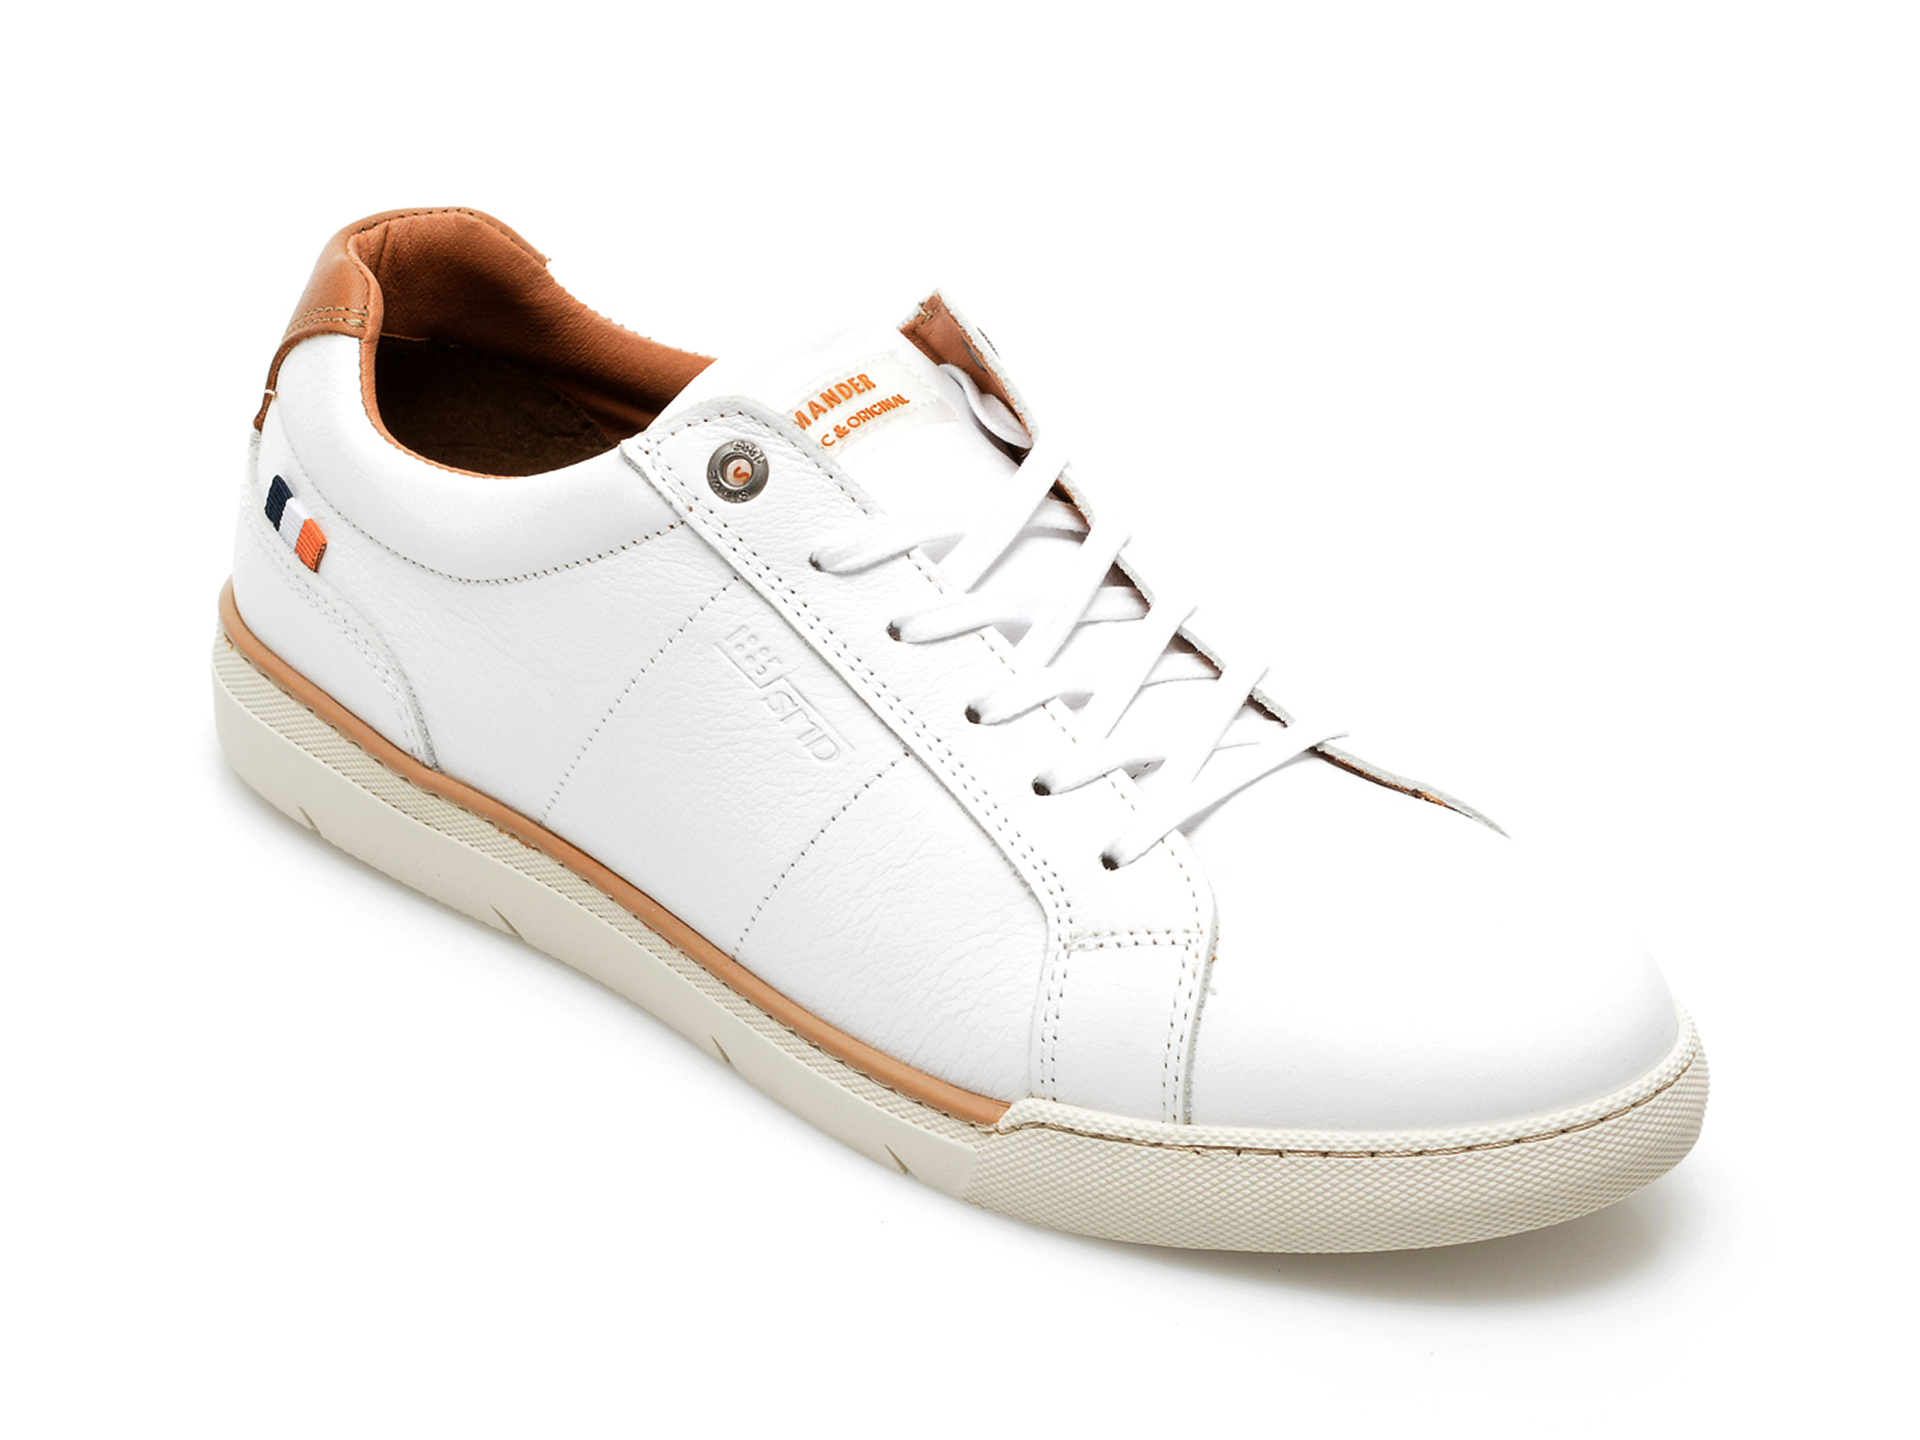 Pantofi sport SALAMANDER albi, 63102, din piele naturala /barbati/pantofi